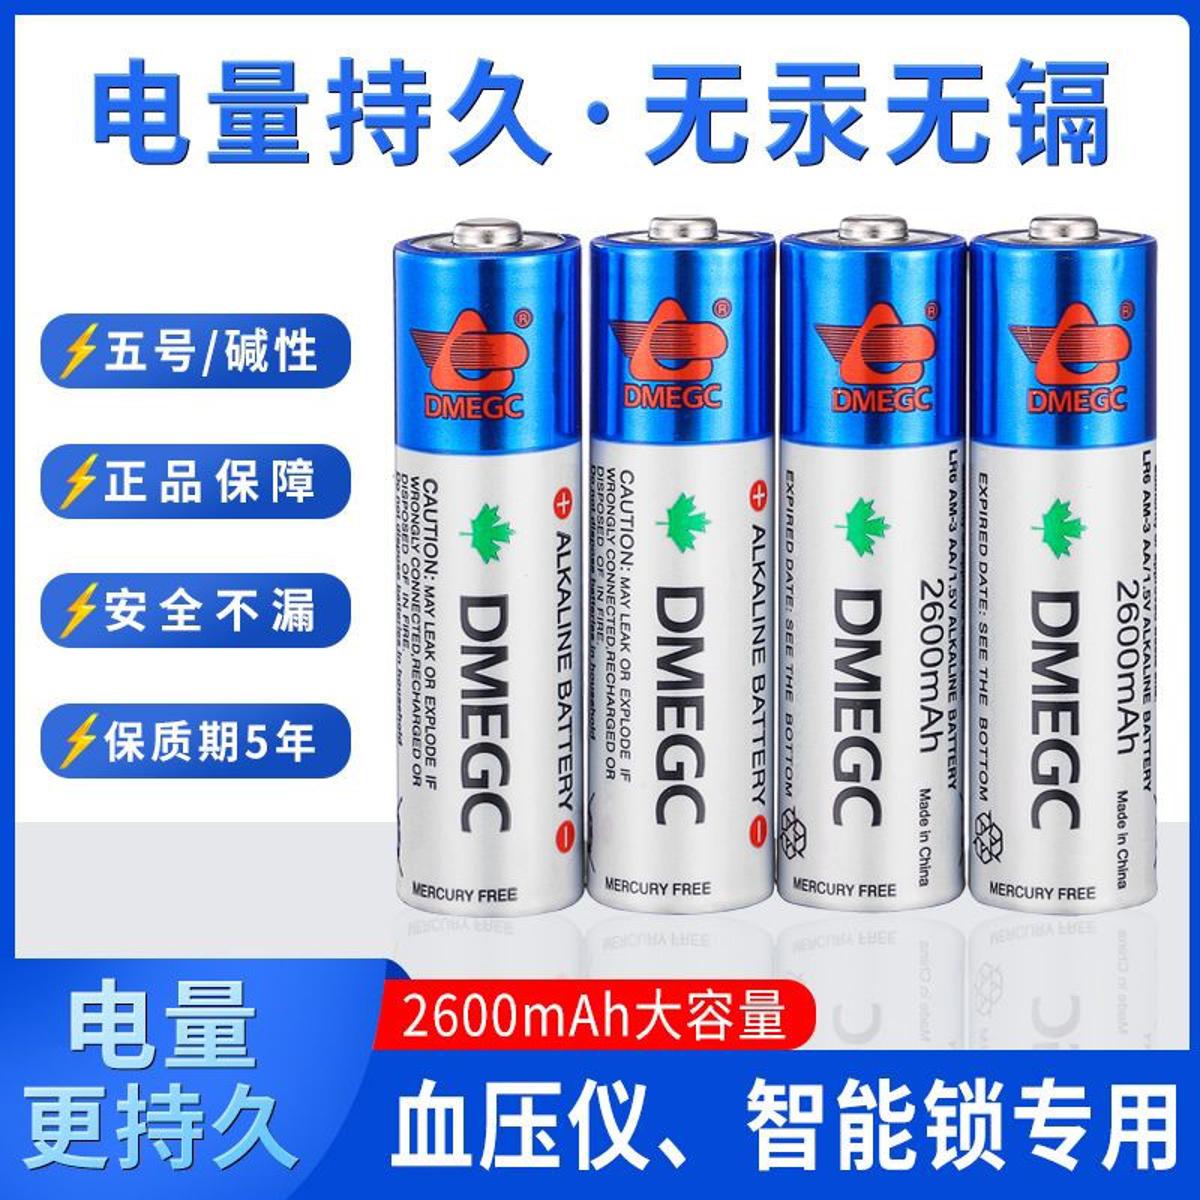 AAA LR03 Alkaline Battery - DMEGC